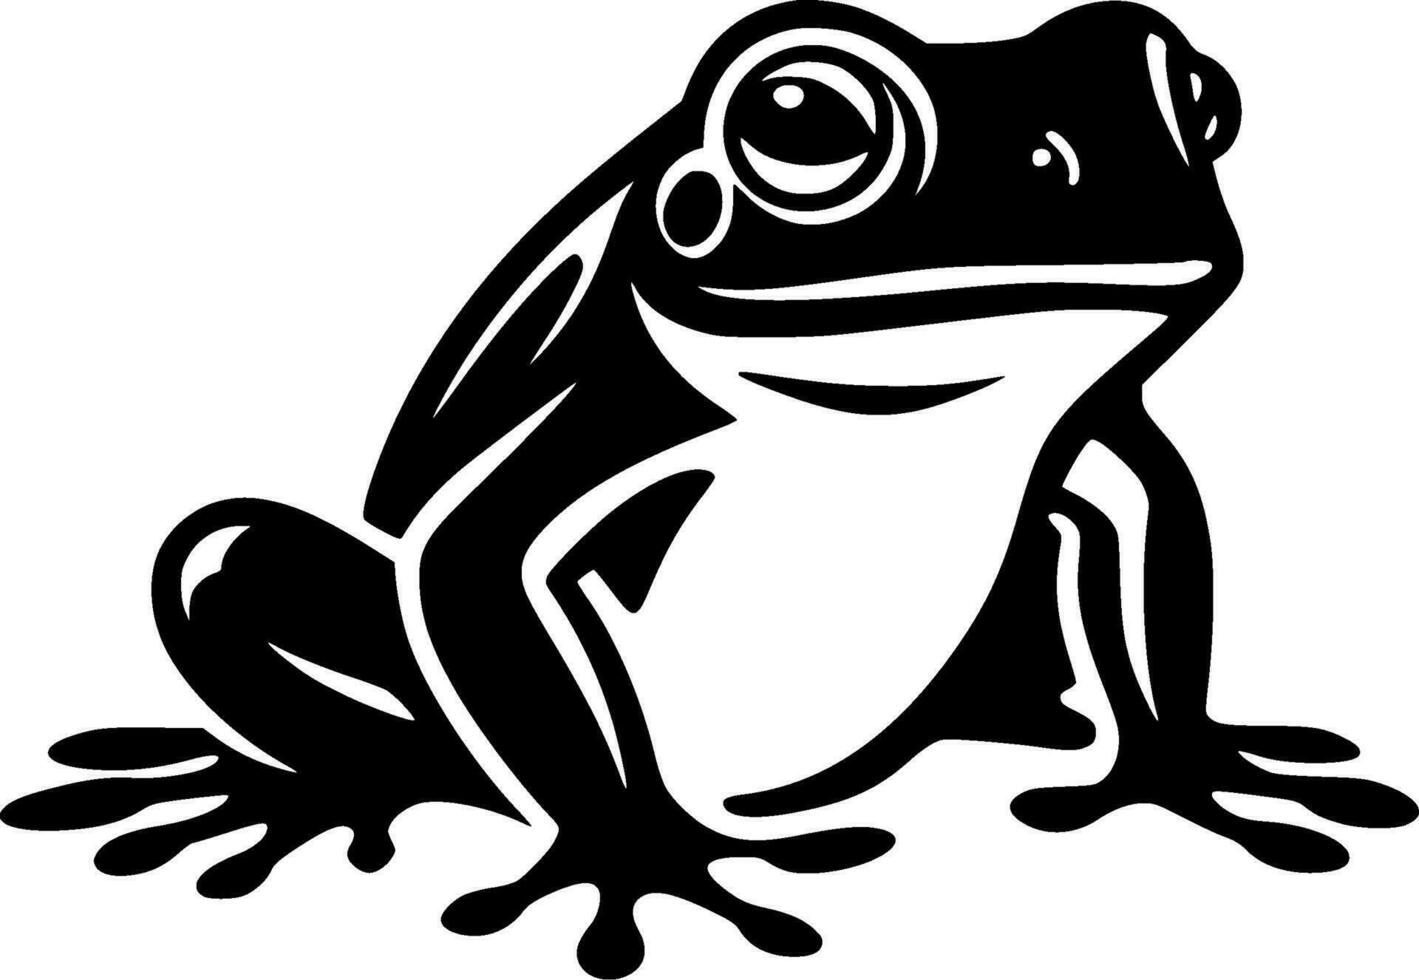 grenouille, noir et blanc vecteur illustration